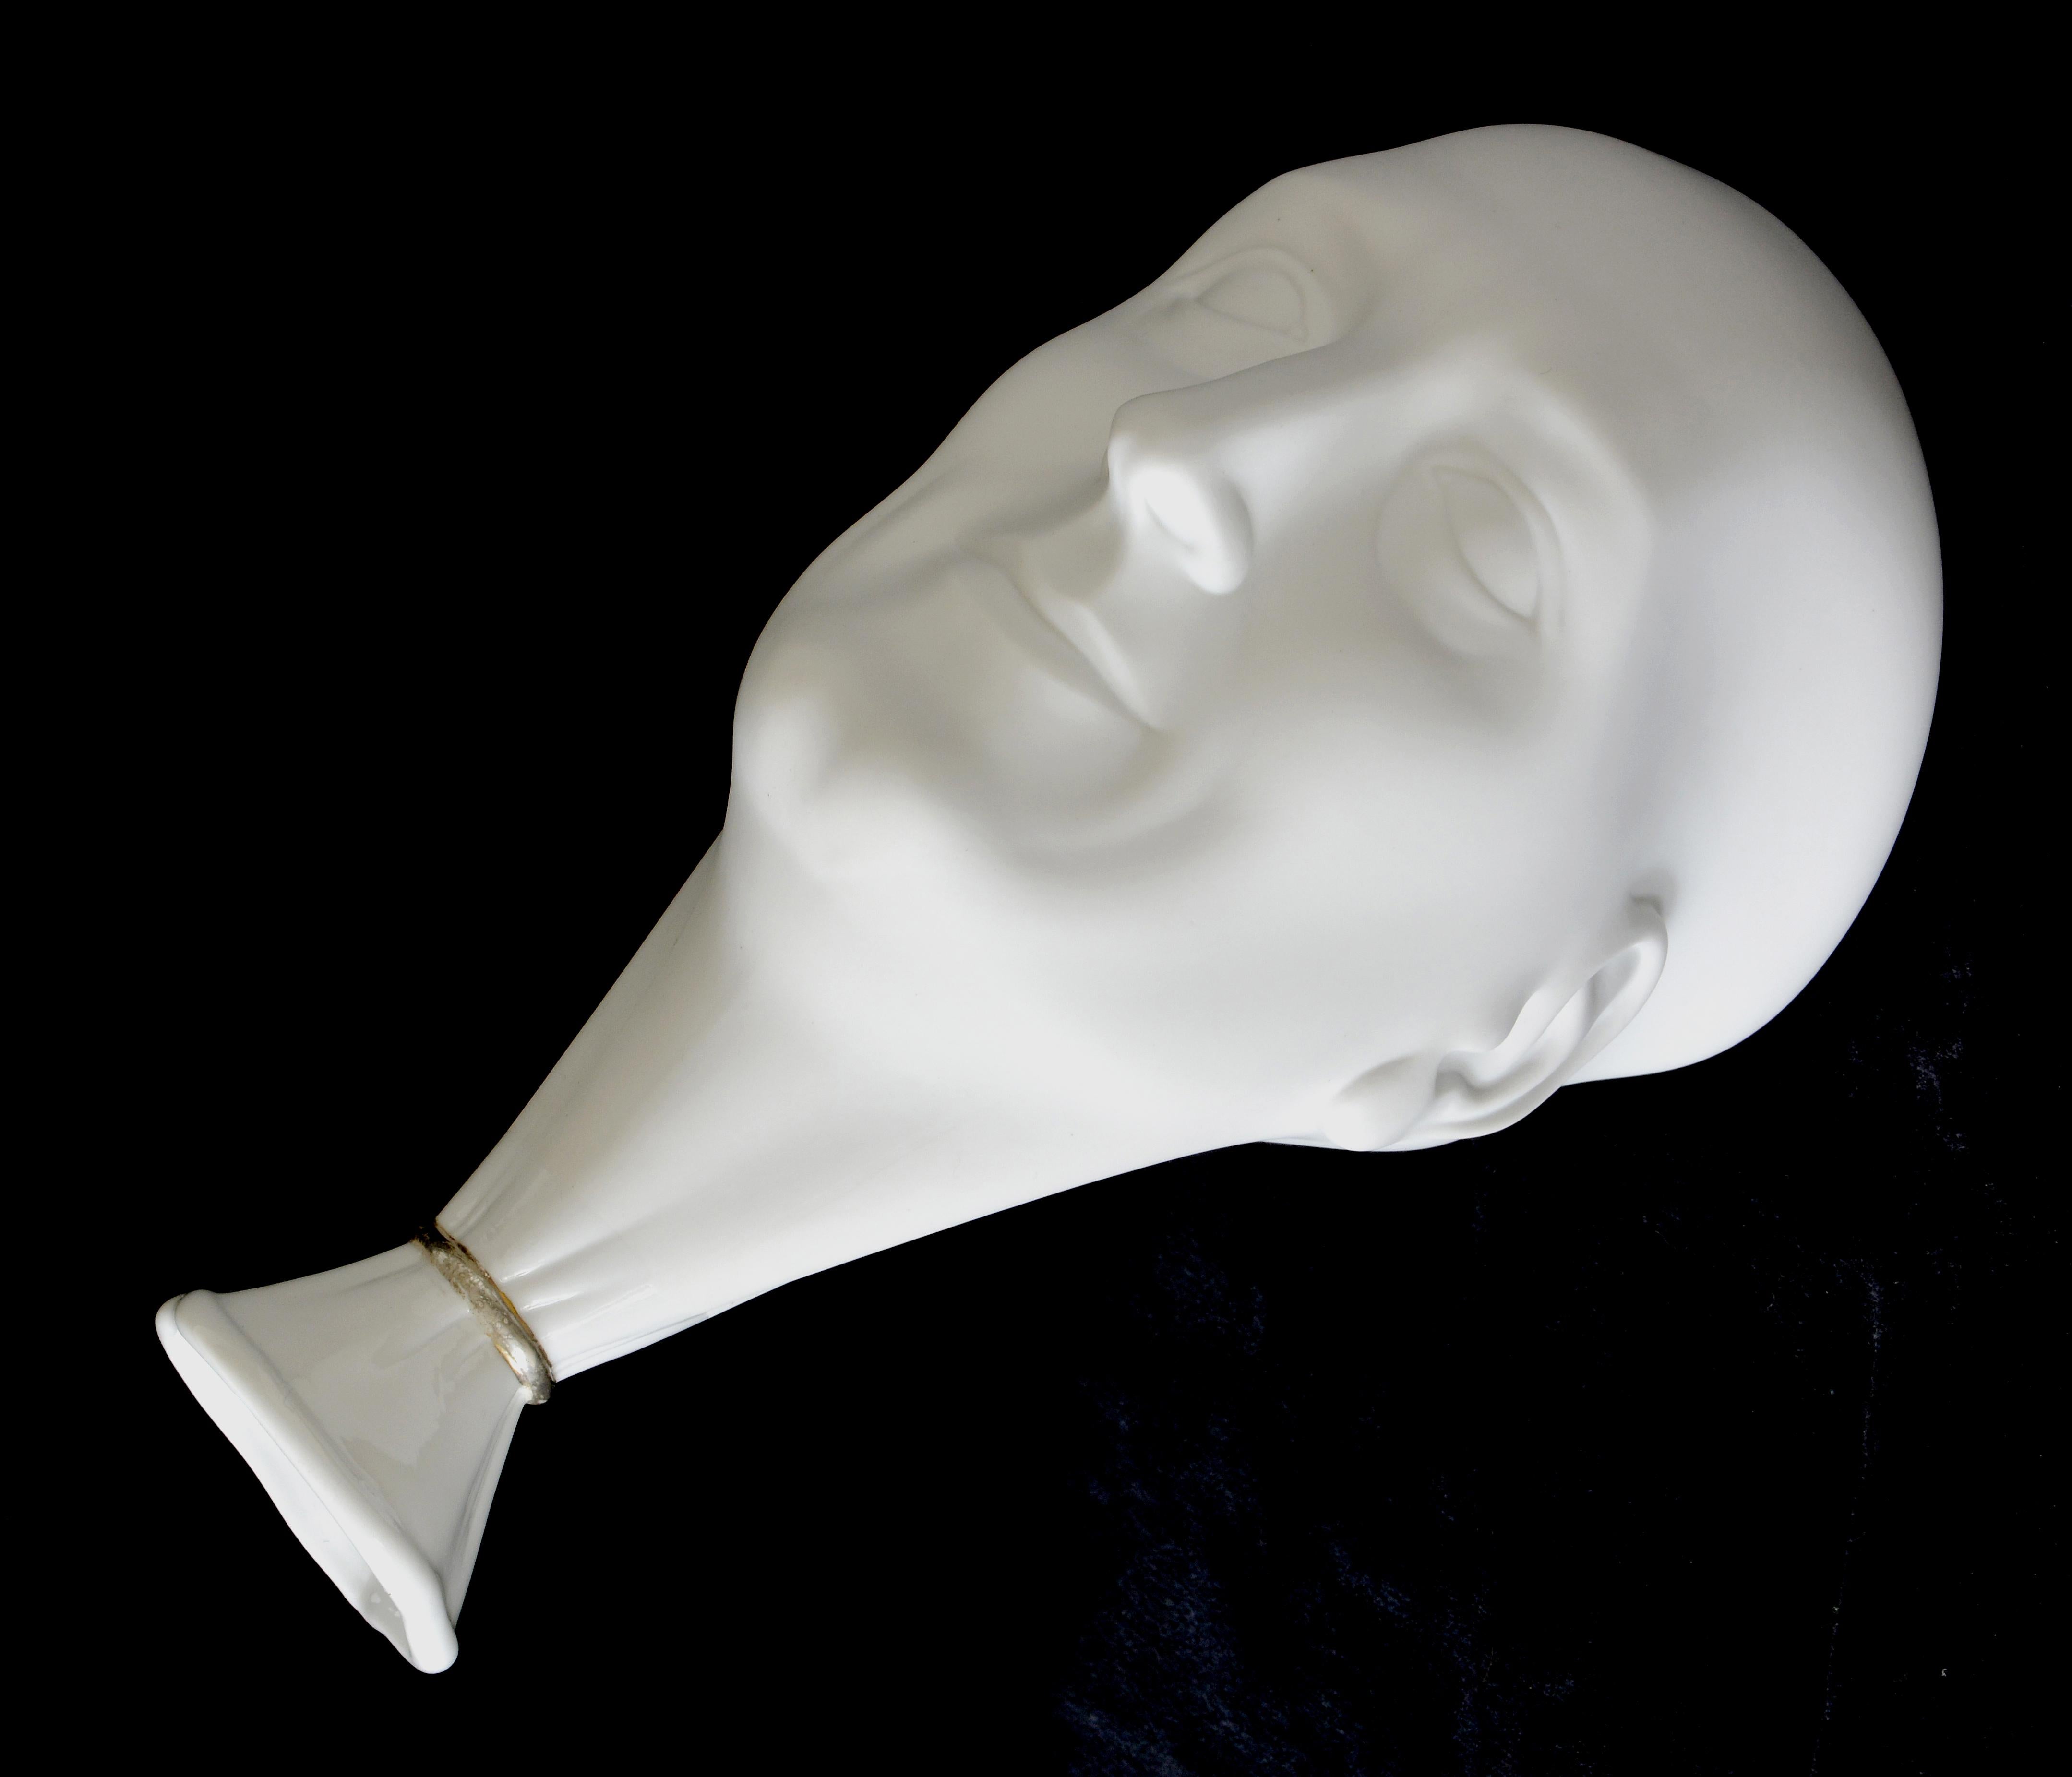 Vase. Une tête d'homme (blanche)

Porcelaine, h 22,5 cm 
par Ilona Romule, sculpteur de premier plan en Lettonie

Le vase présente l'interprétation artistique d'une tête d'homme, capturant ses caractéristiques et sa forme uniques. L'utilisation de